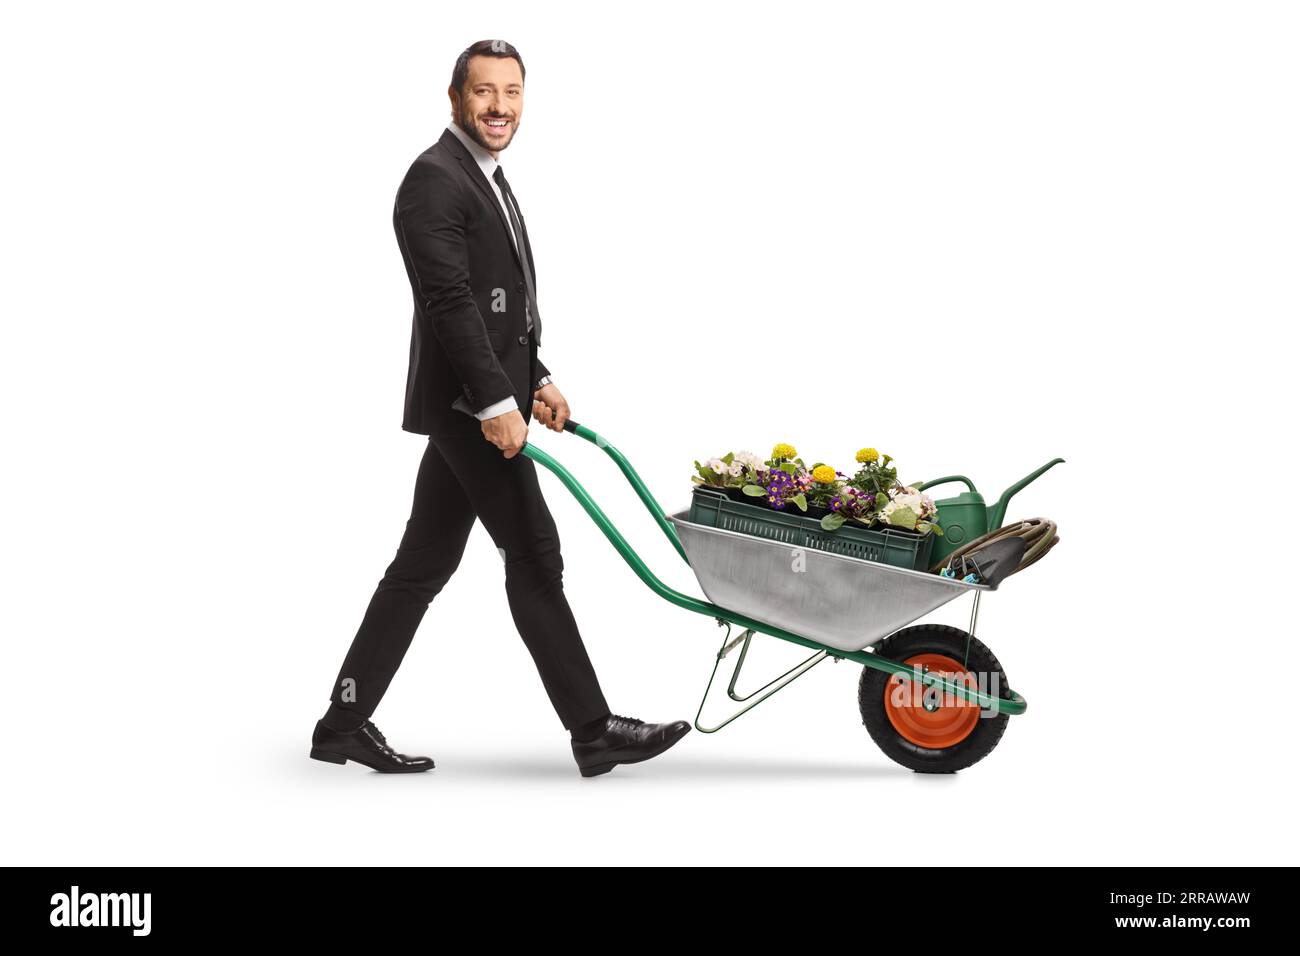 Foto a profilo completo di un uomo d'affari che spinge una carriola con fiori e innaffiatura può essere isolato su sfondo bianco Foto Stock